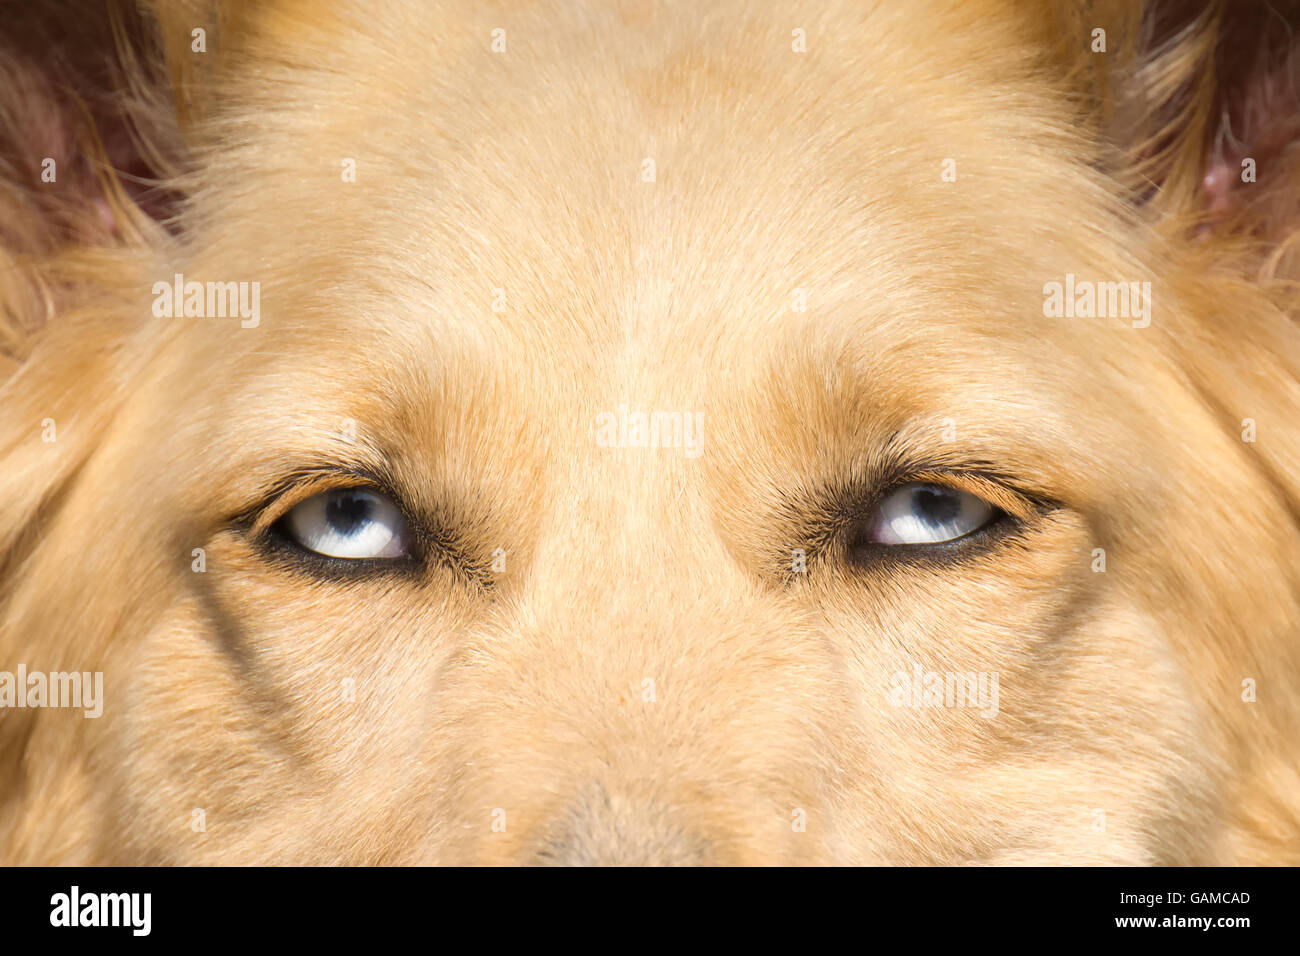 White Shepherd dog with blue eyes close up portrait. Stock Photo